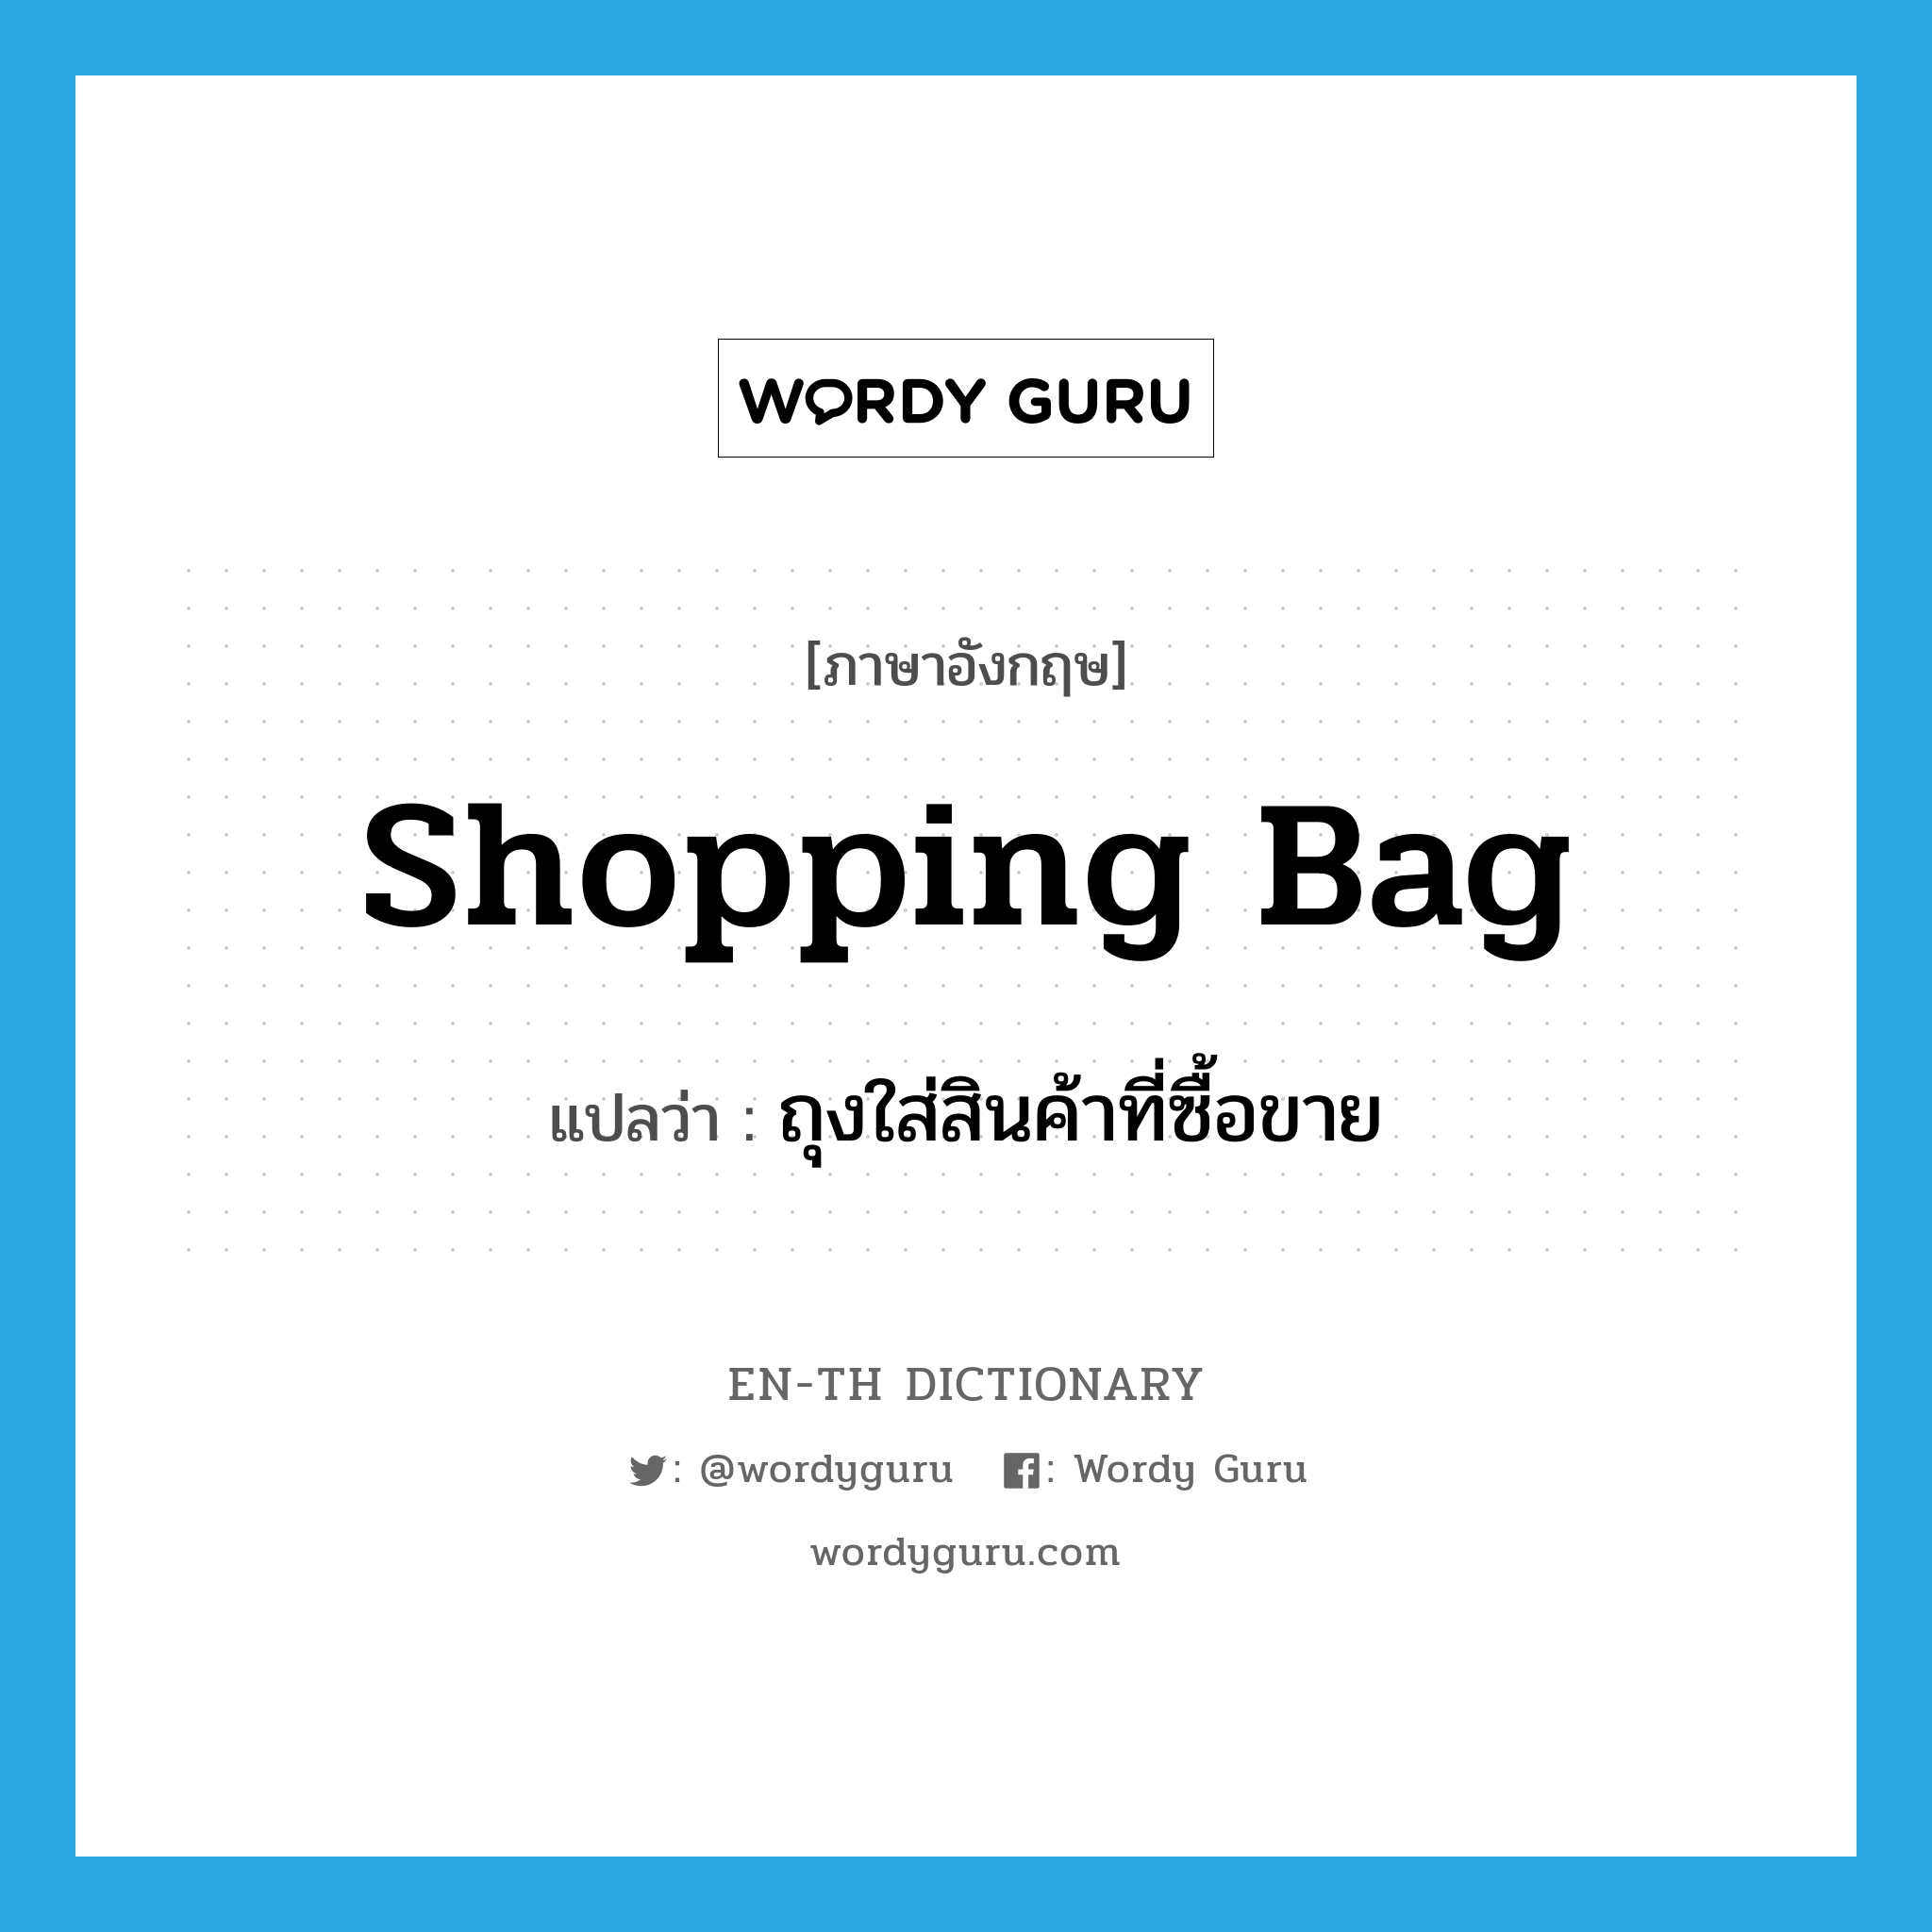 shopping bag แปลว่า?, คำศัพท์ภาษาอังกฤษ shopping bag แปลว่า ถุงใส่สินค้าที่ซื้อขาย ประเภท N หมวด N